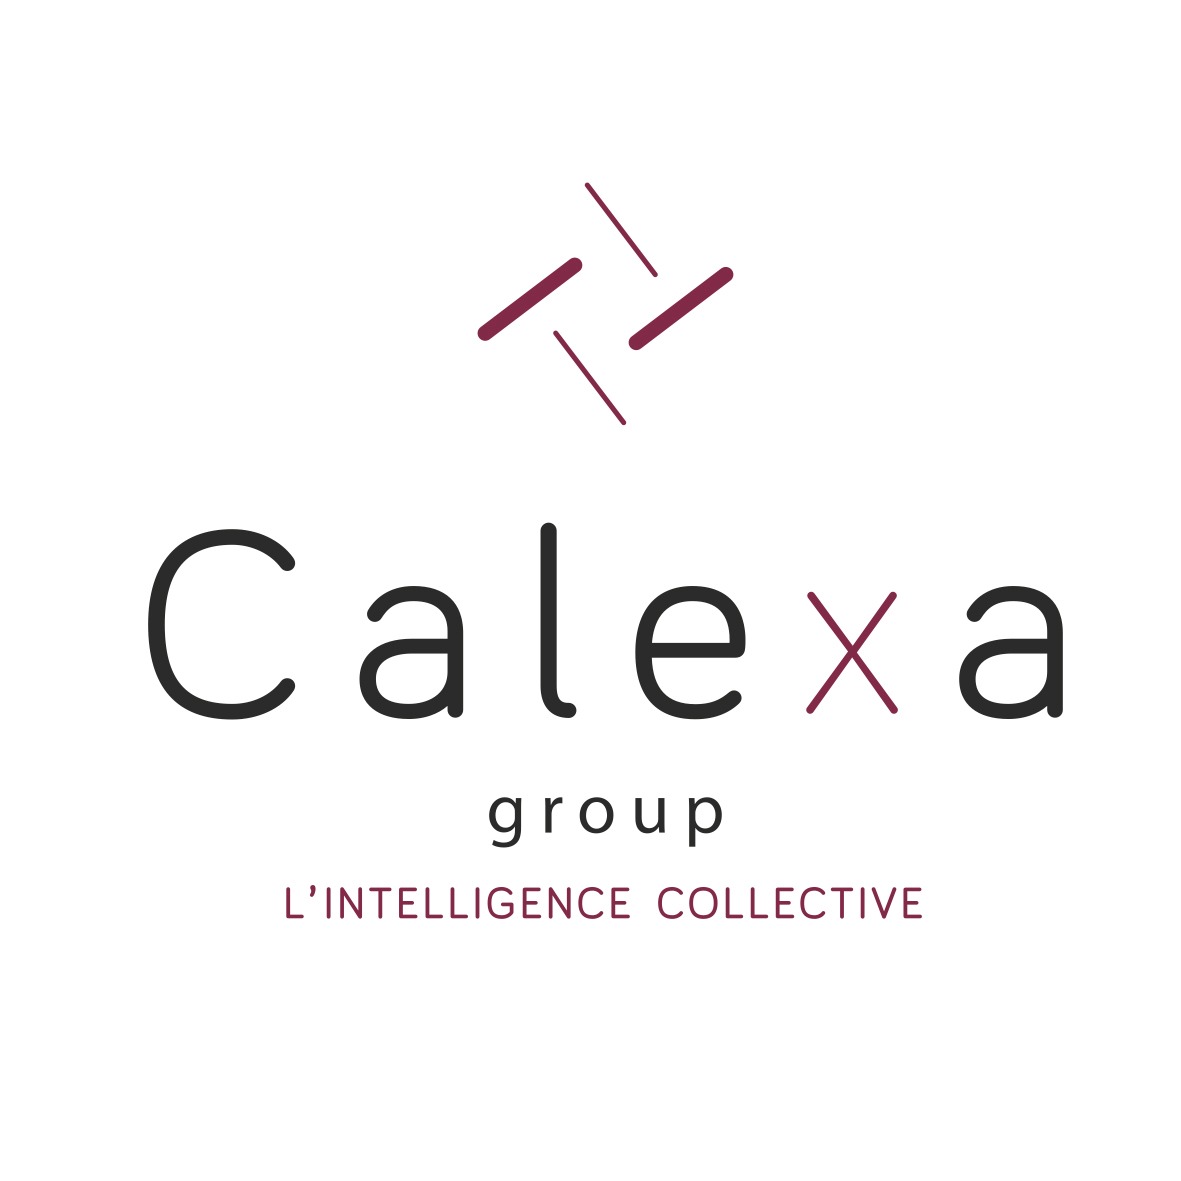 Calexa Group